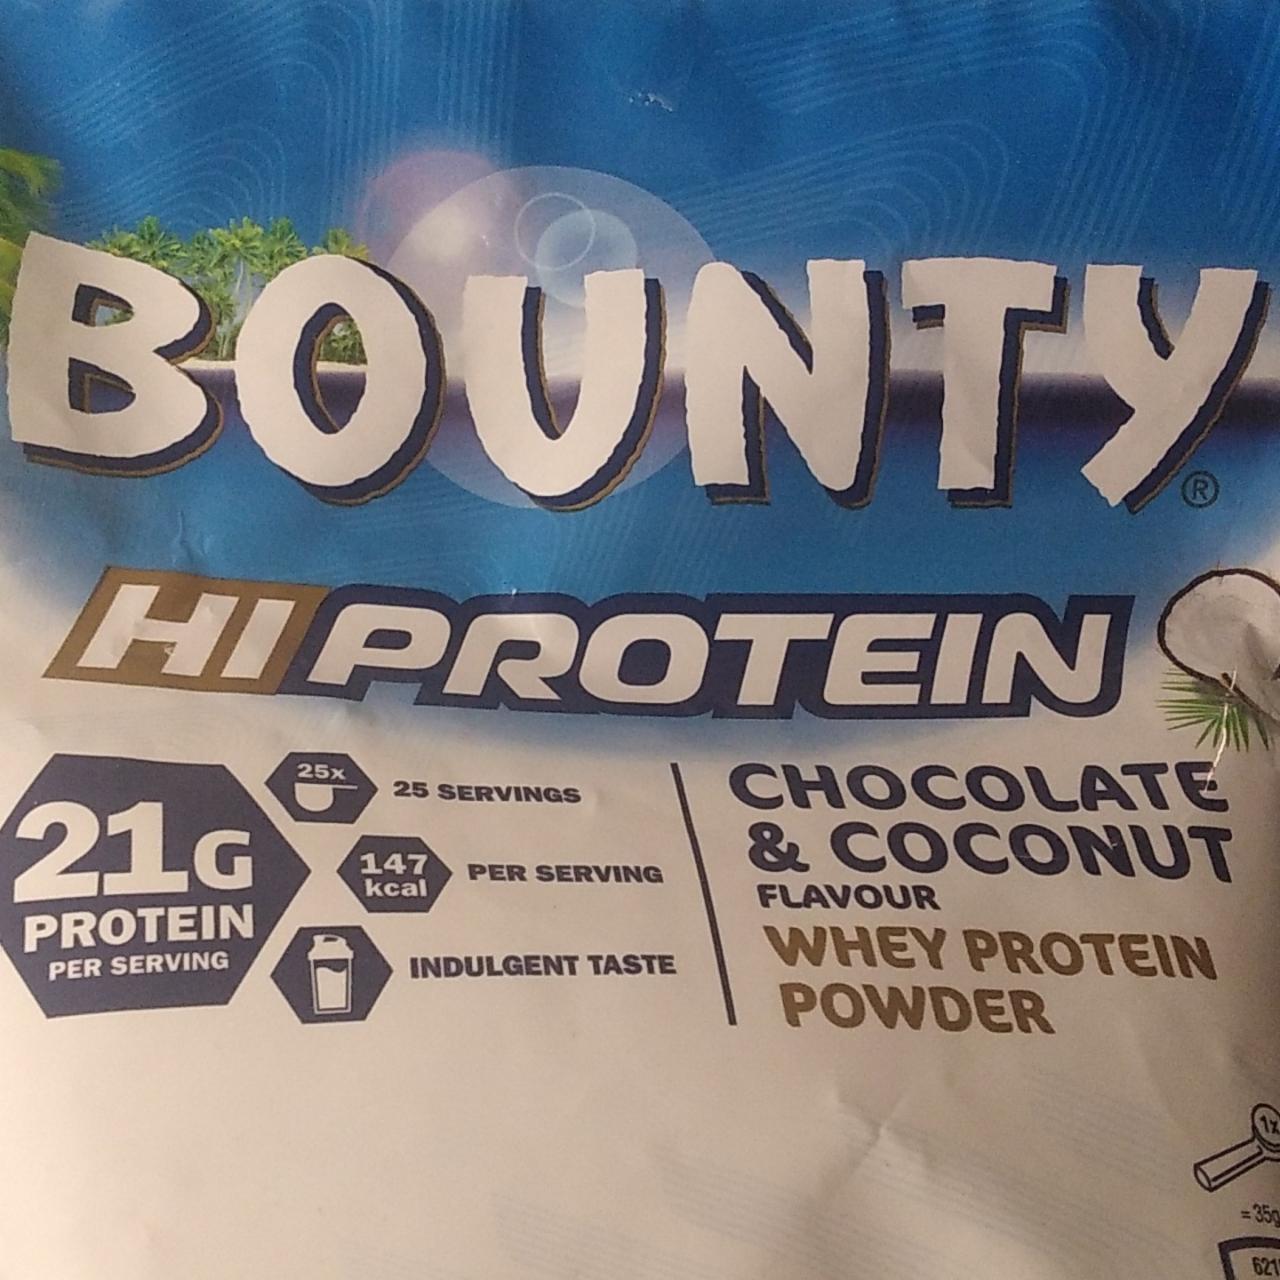 Zdjęcia - Bounty hiprotein